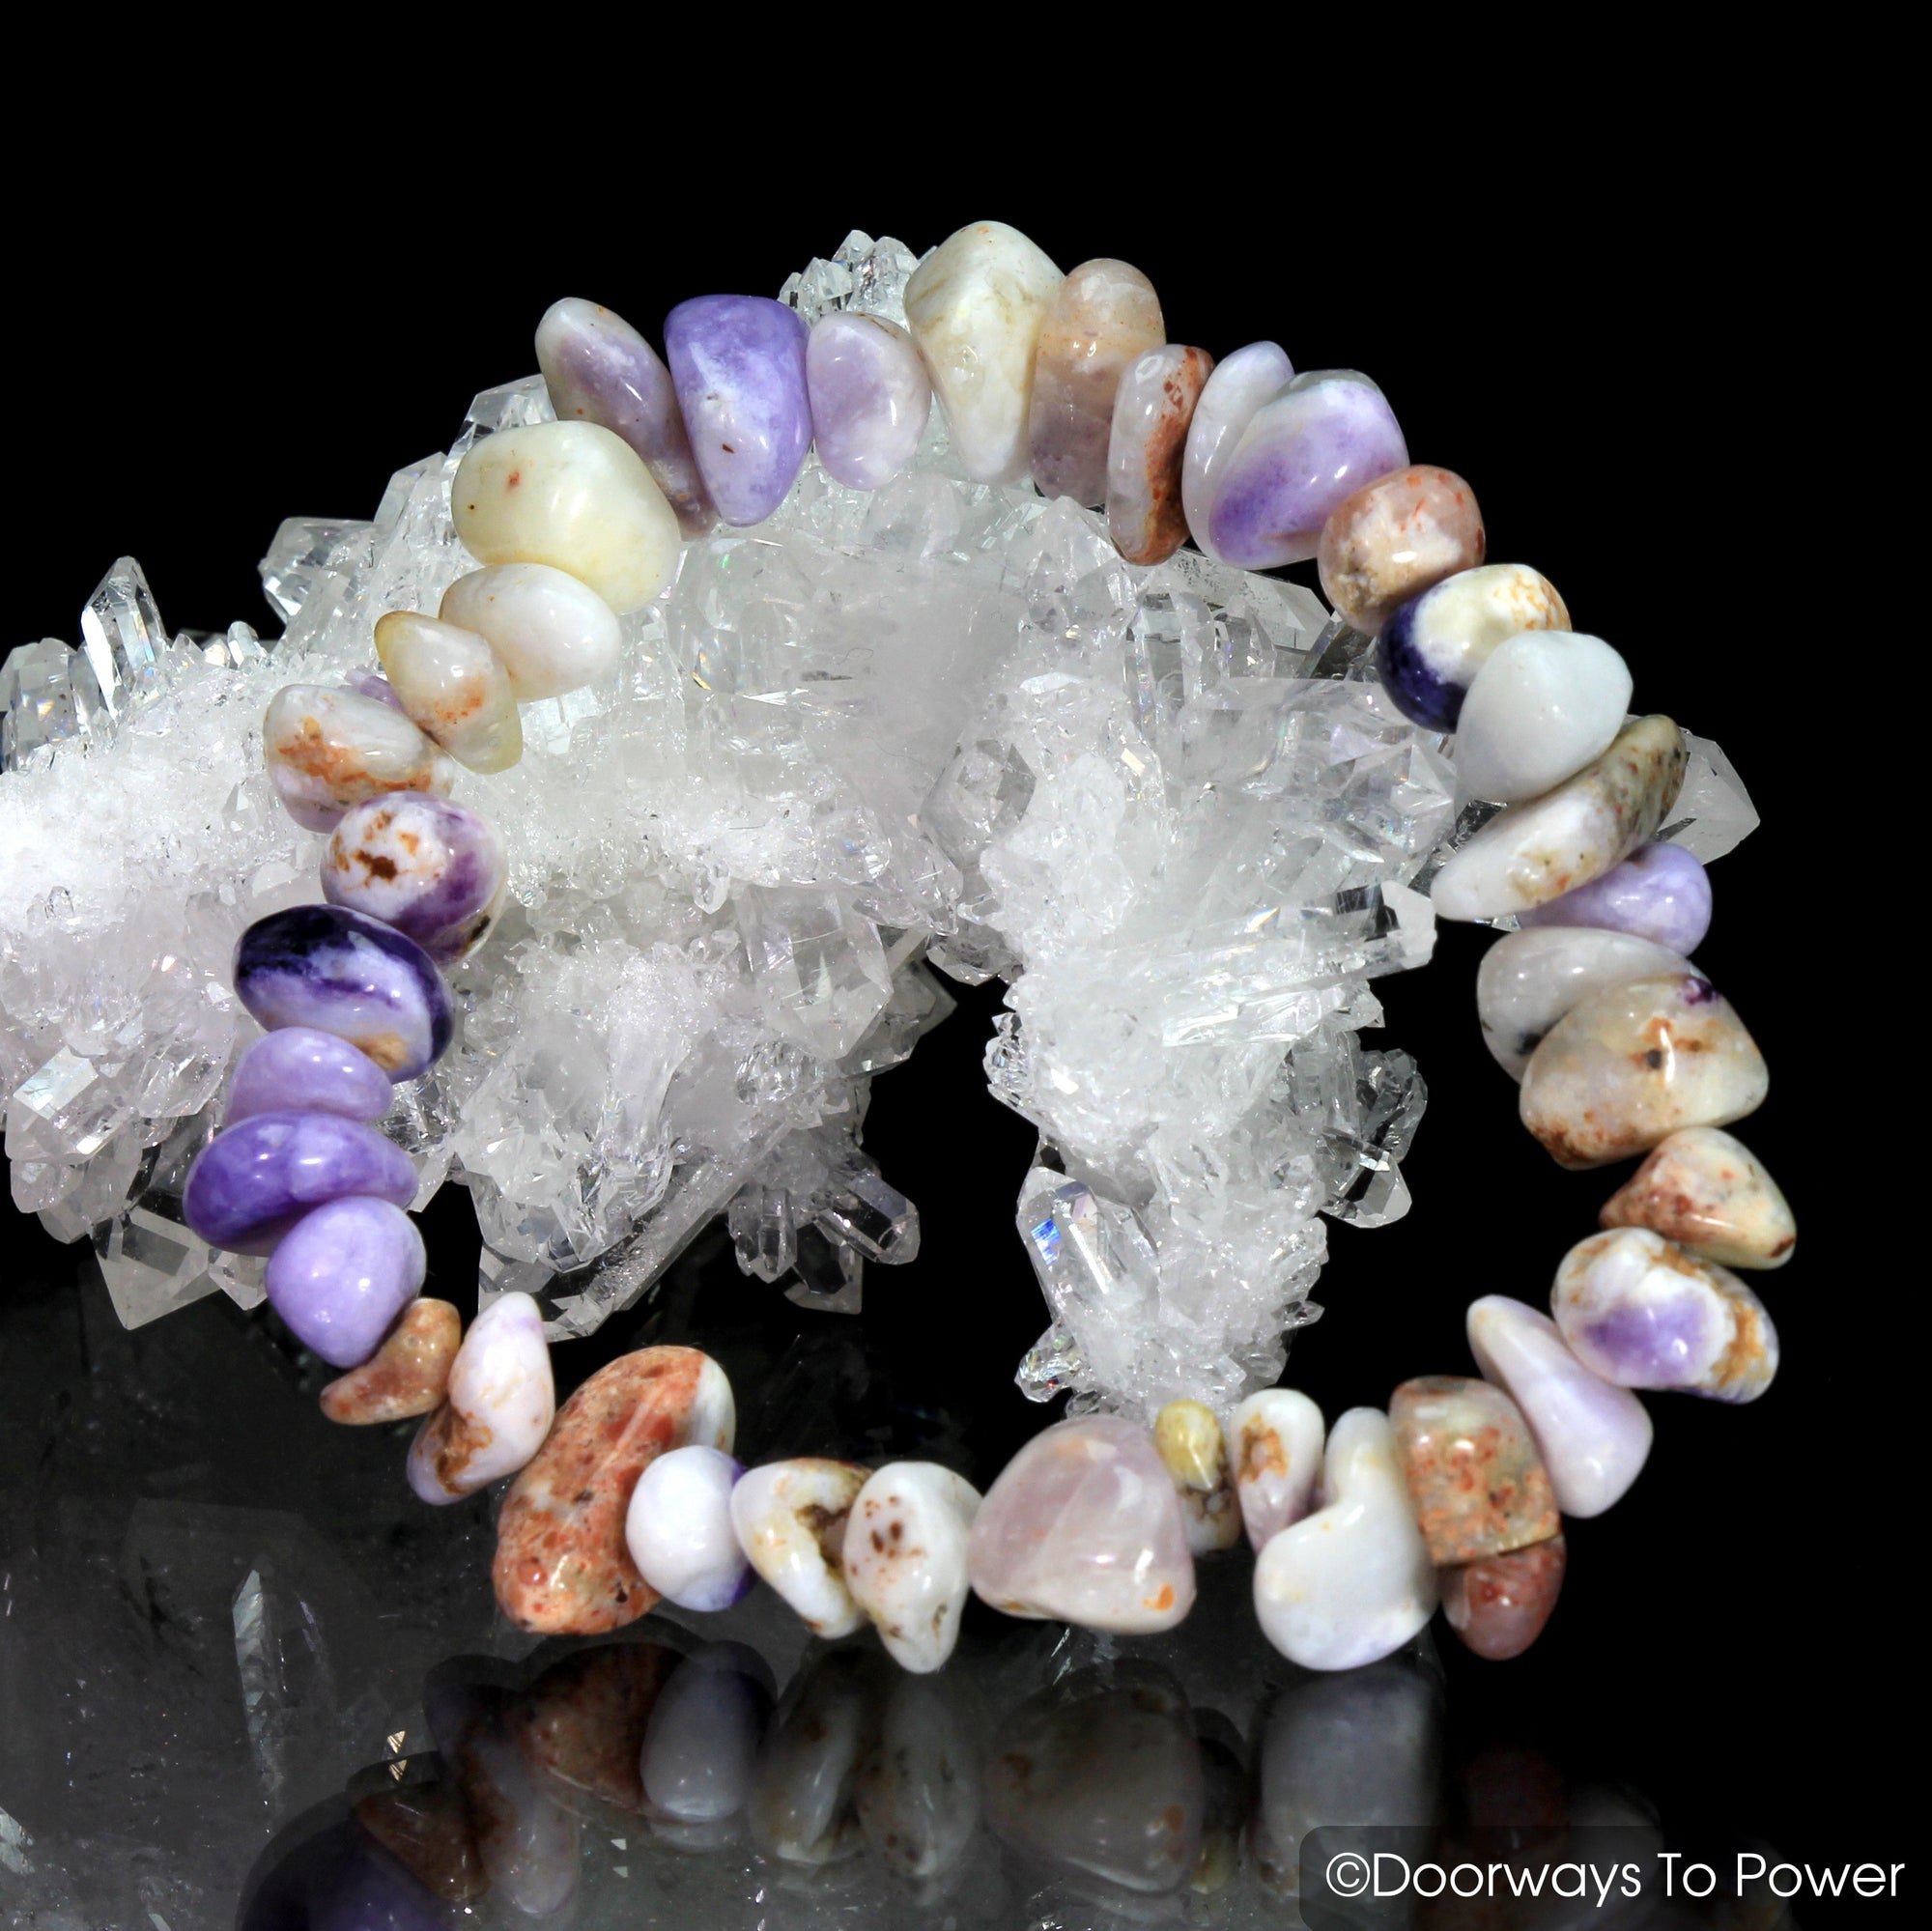 Violet Flame Opal Crystal Energy Bracelets